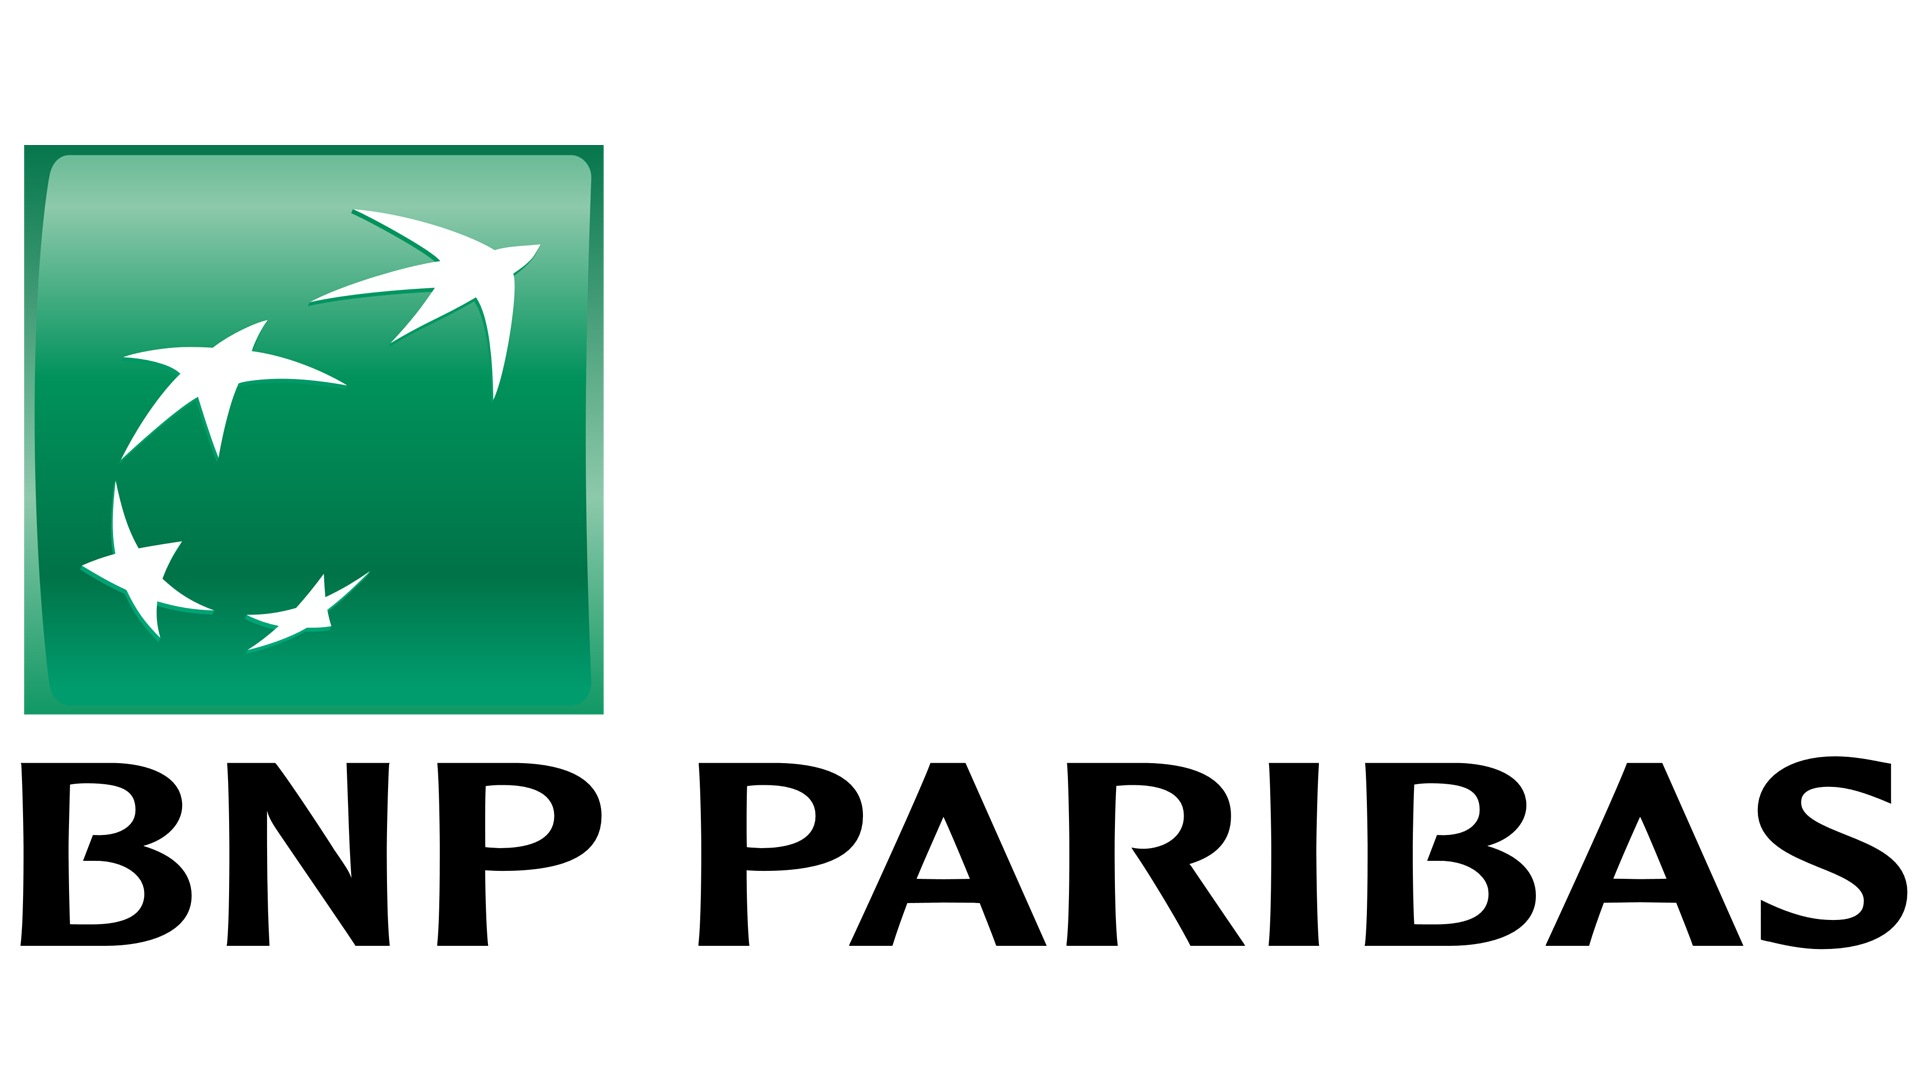 BNP Paribas logo : histoire, signification et évolution, symbole